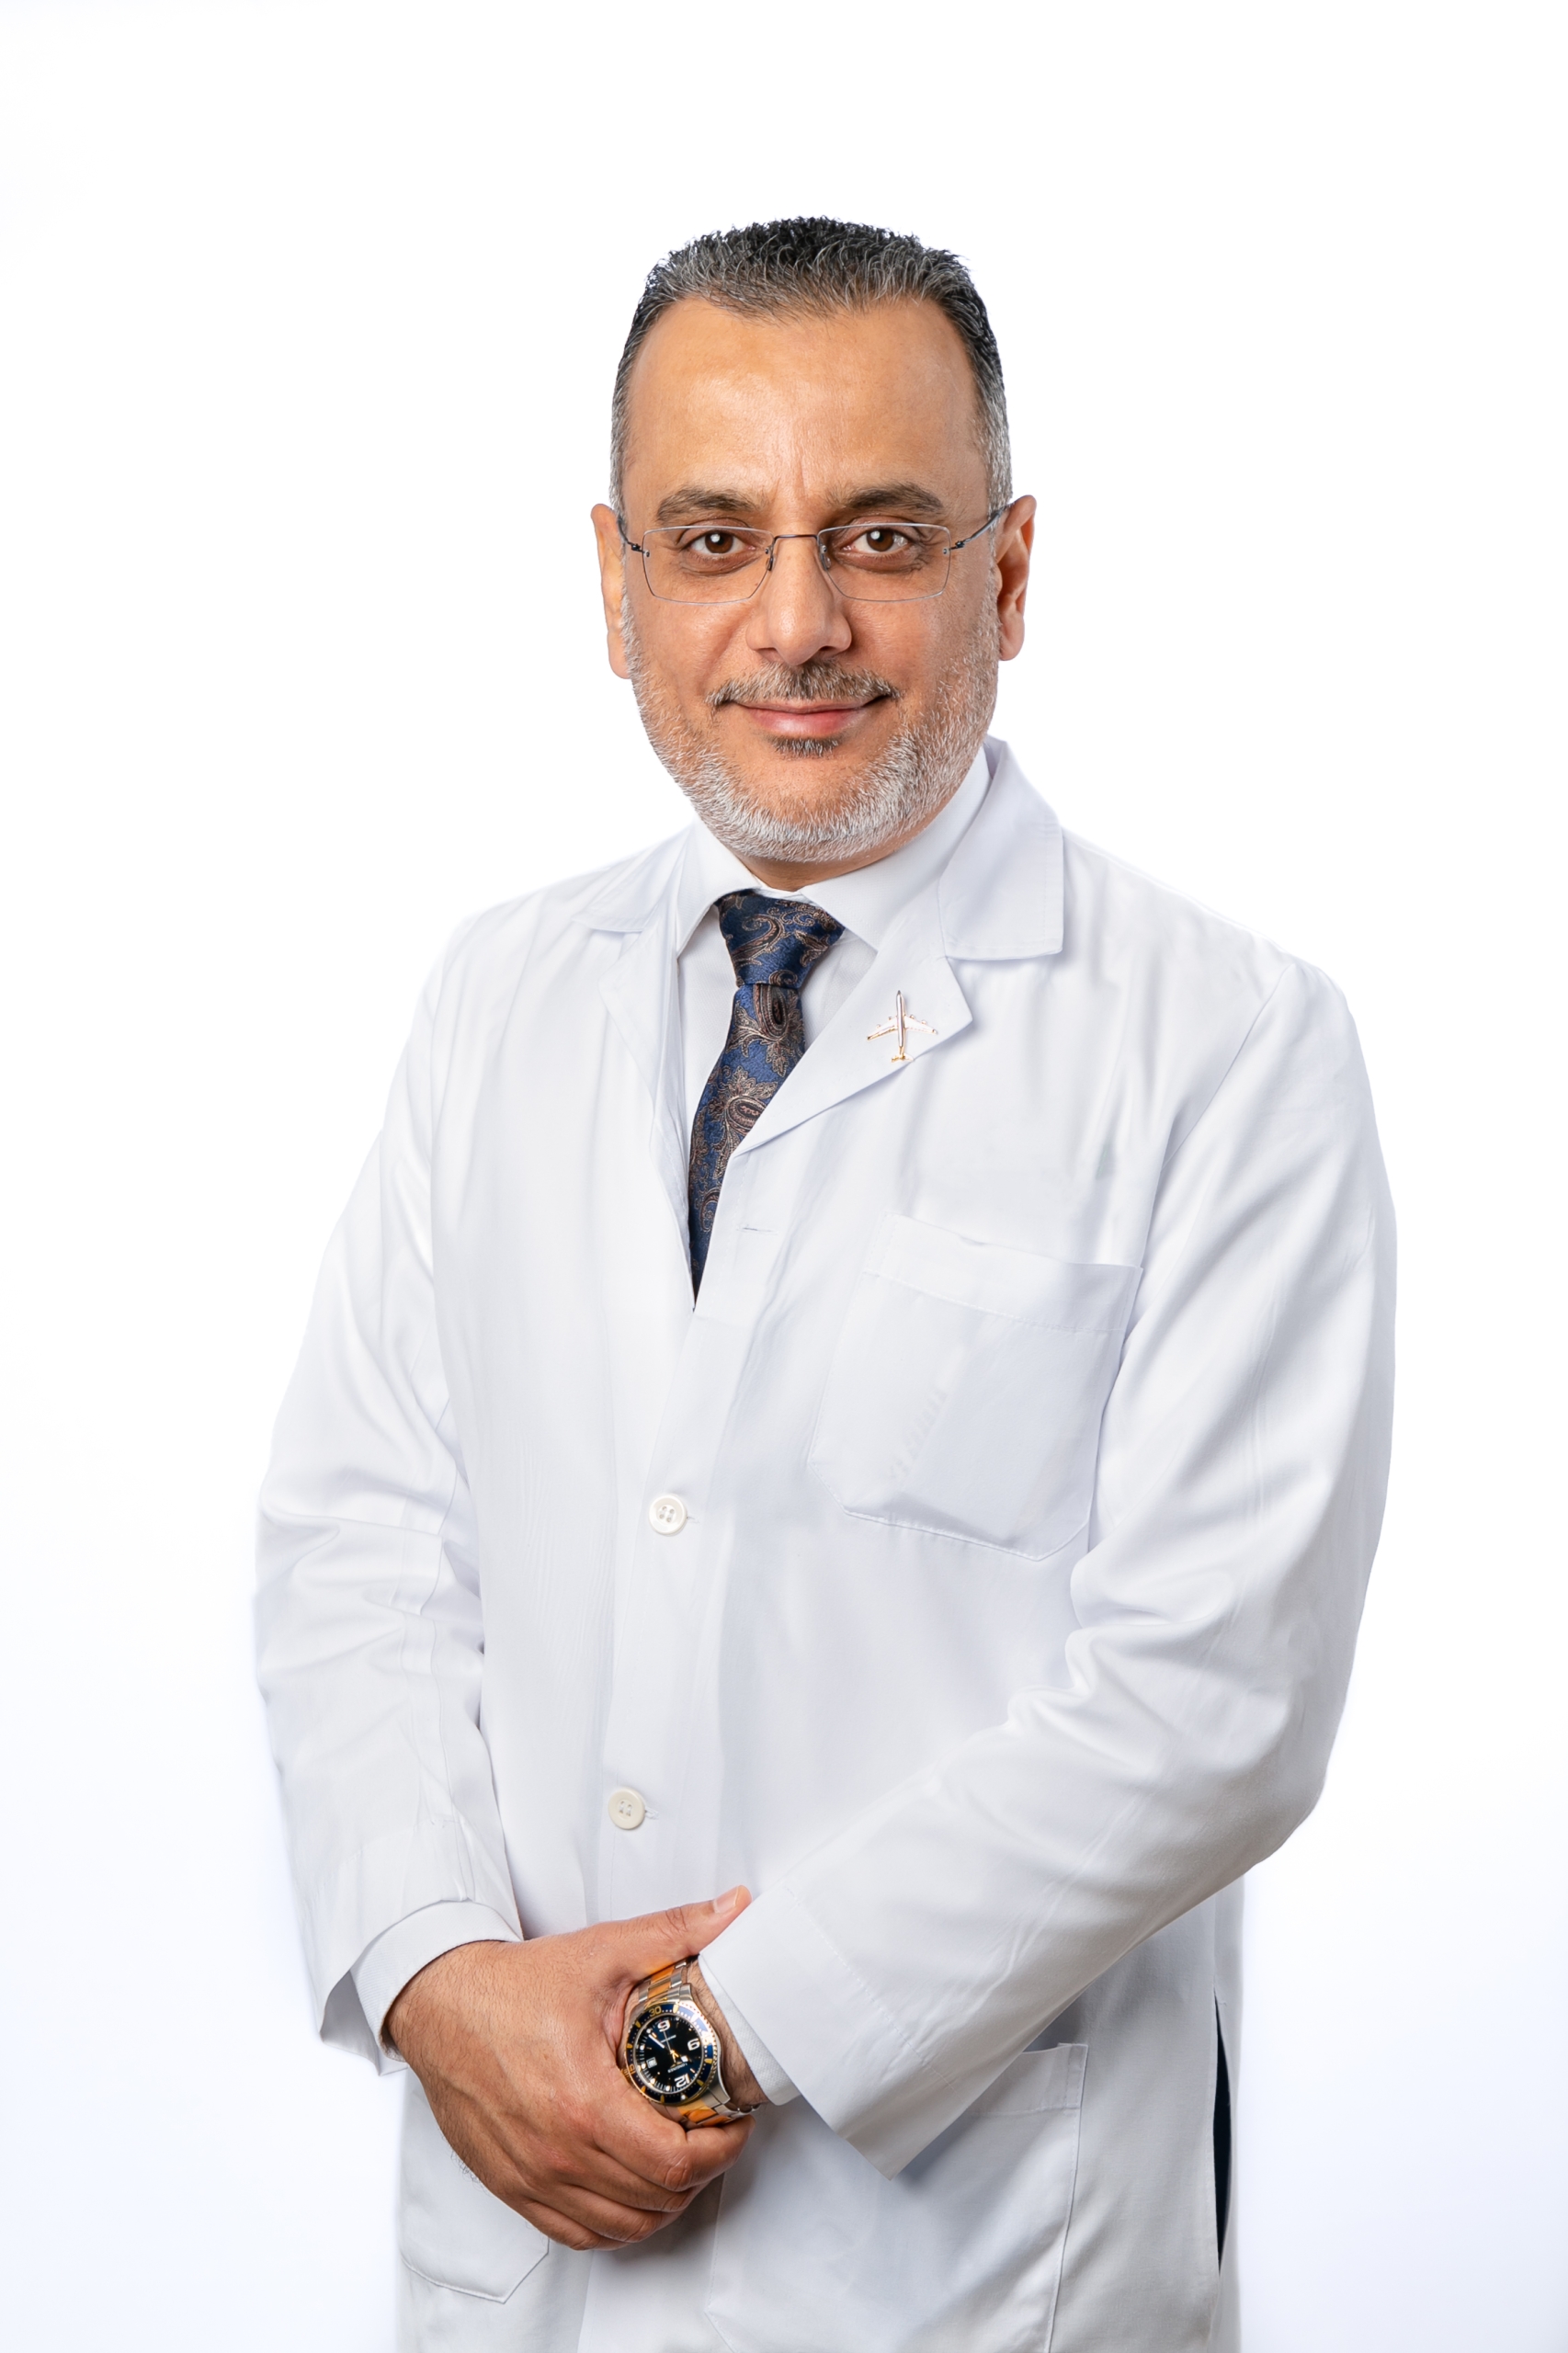 Dr. Labib Sallam Darwish Al Ozaibi